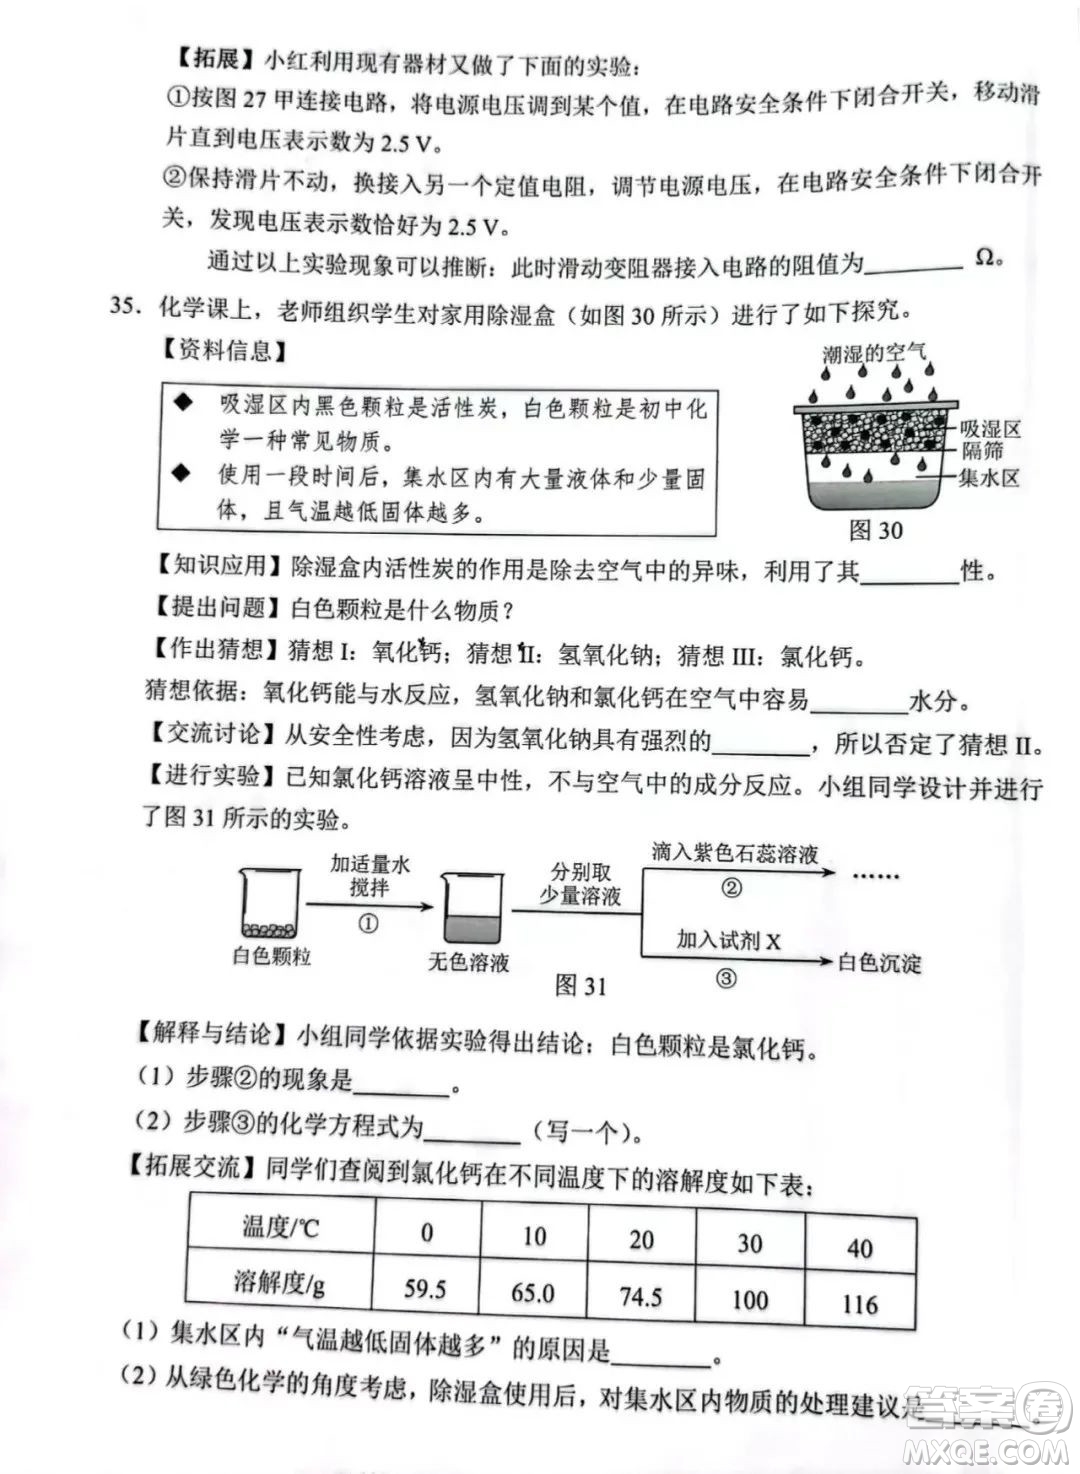 2022年河北省初中毕业生升学文化课考试理科综合试卷及答案插图(9)